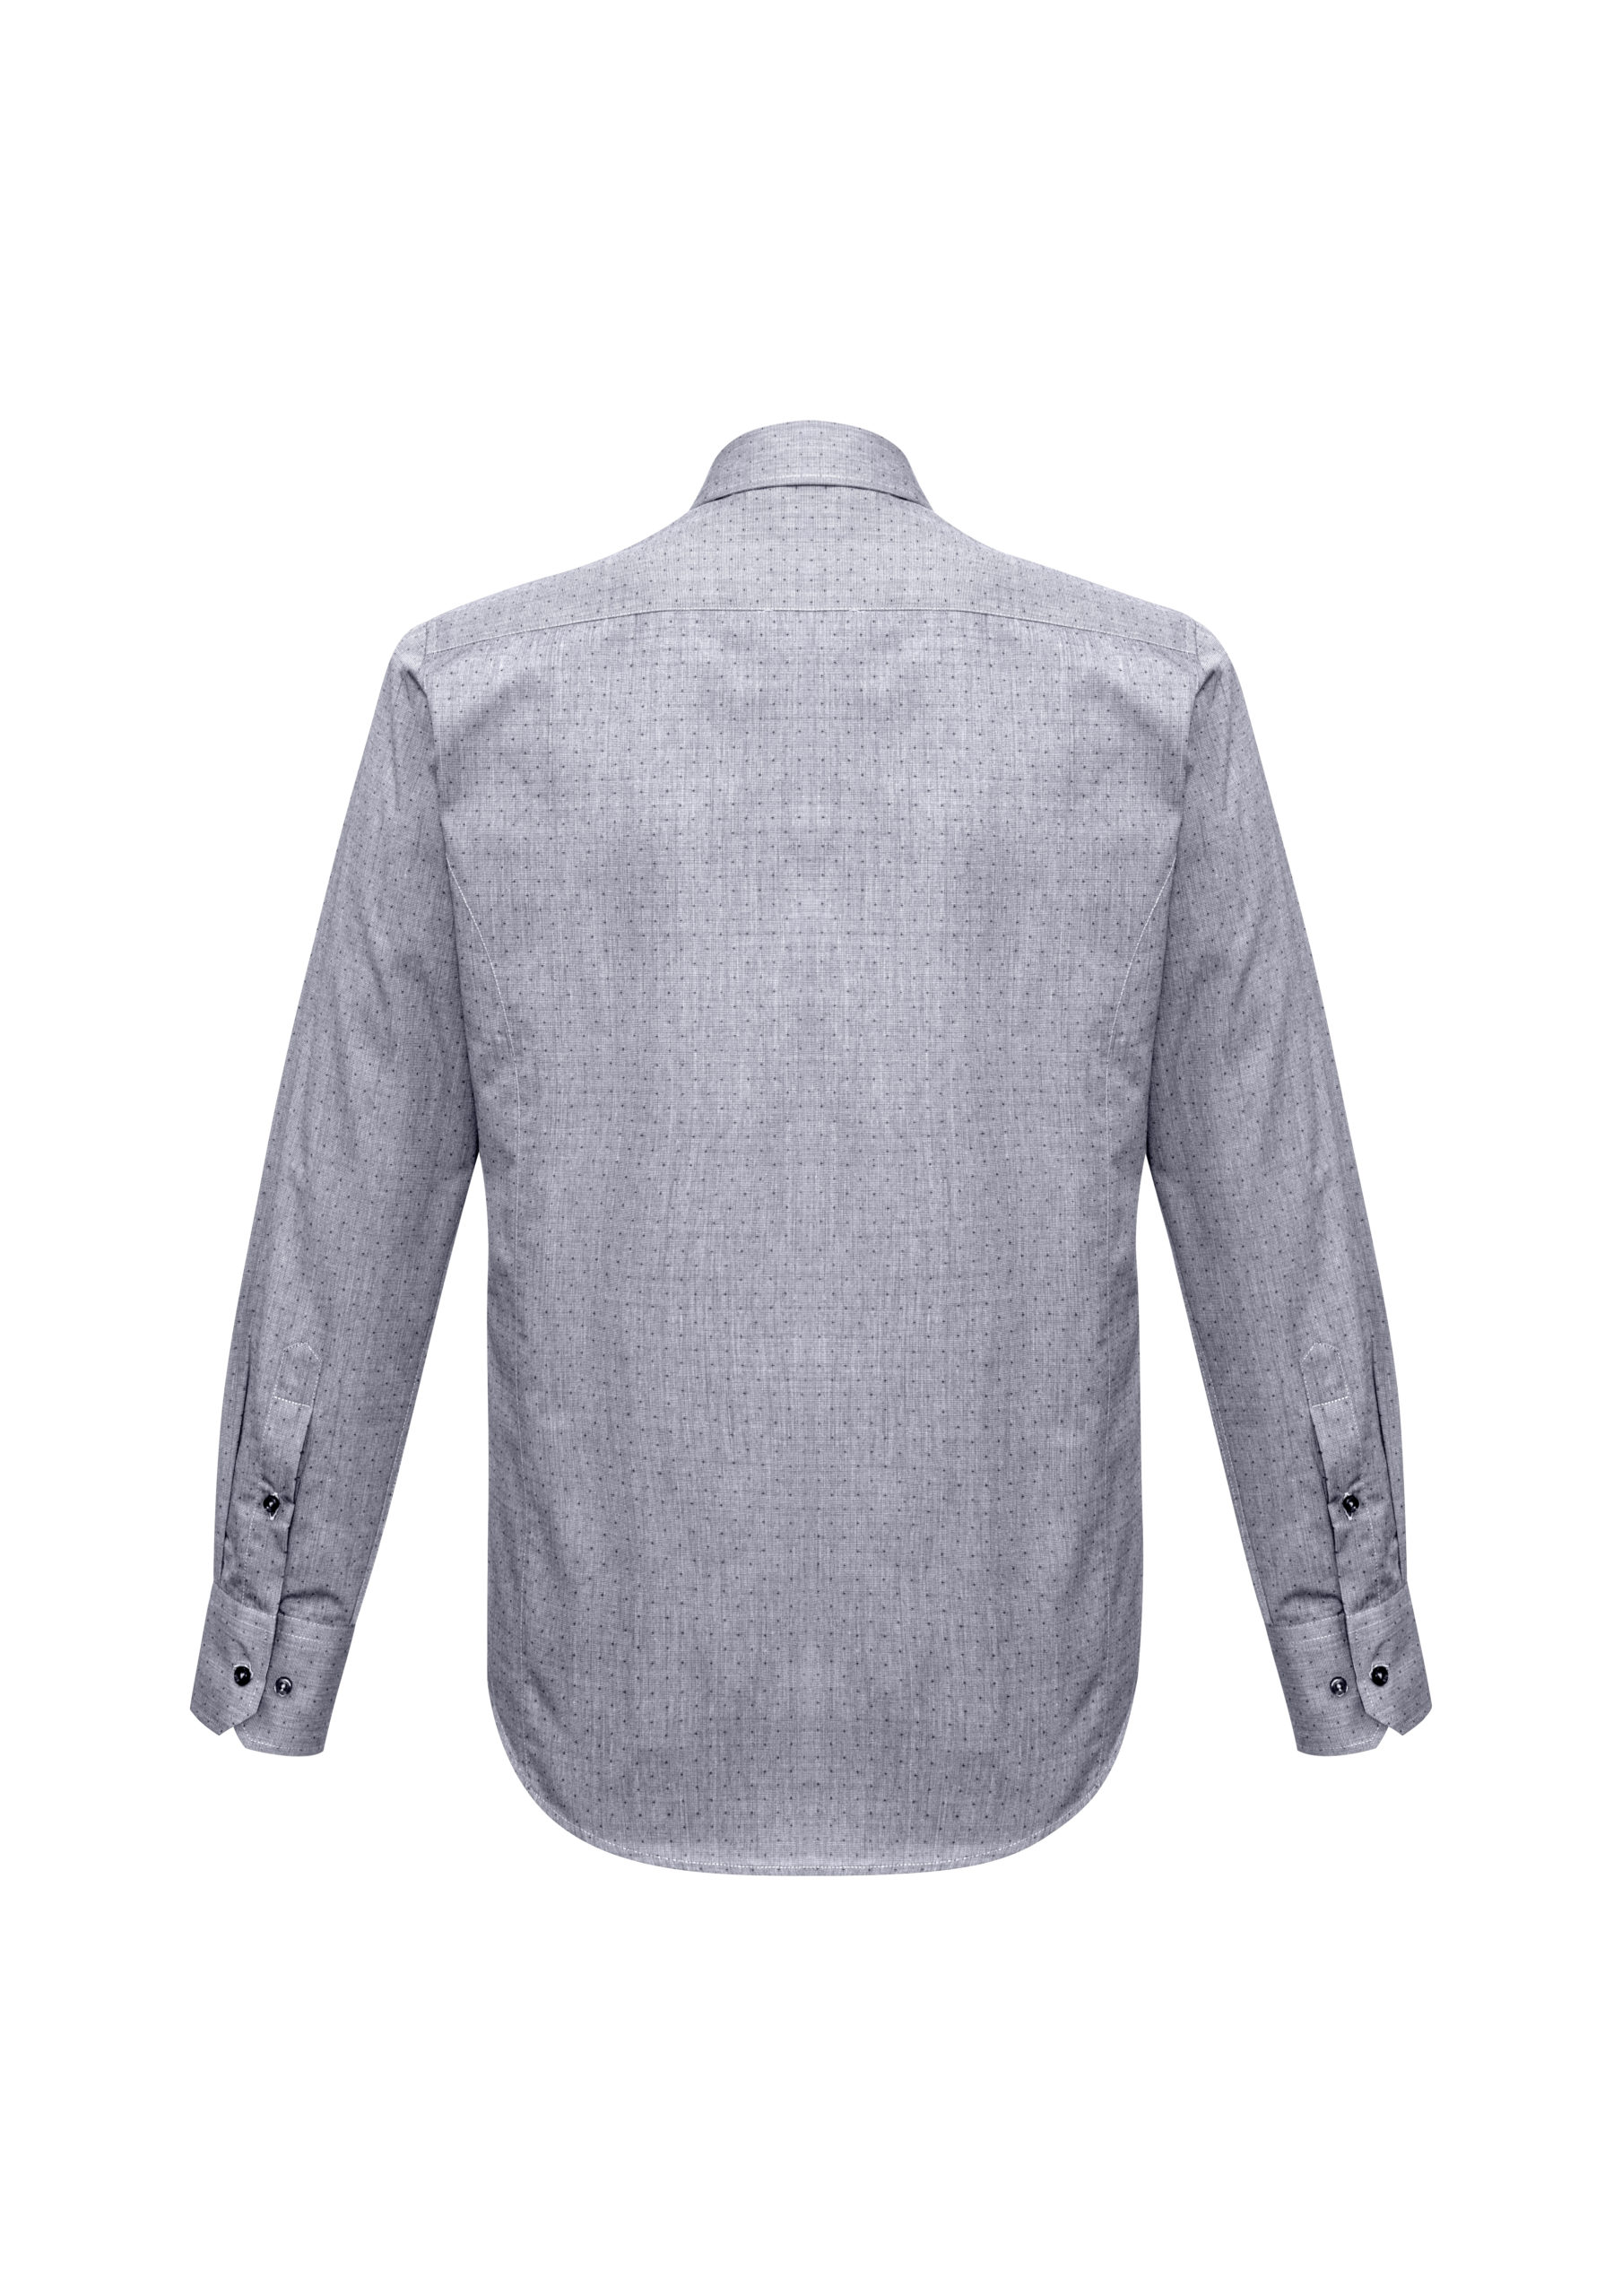 Mens Trend Long Sleeve Shirt » Australian Merch Co